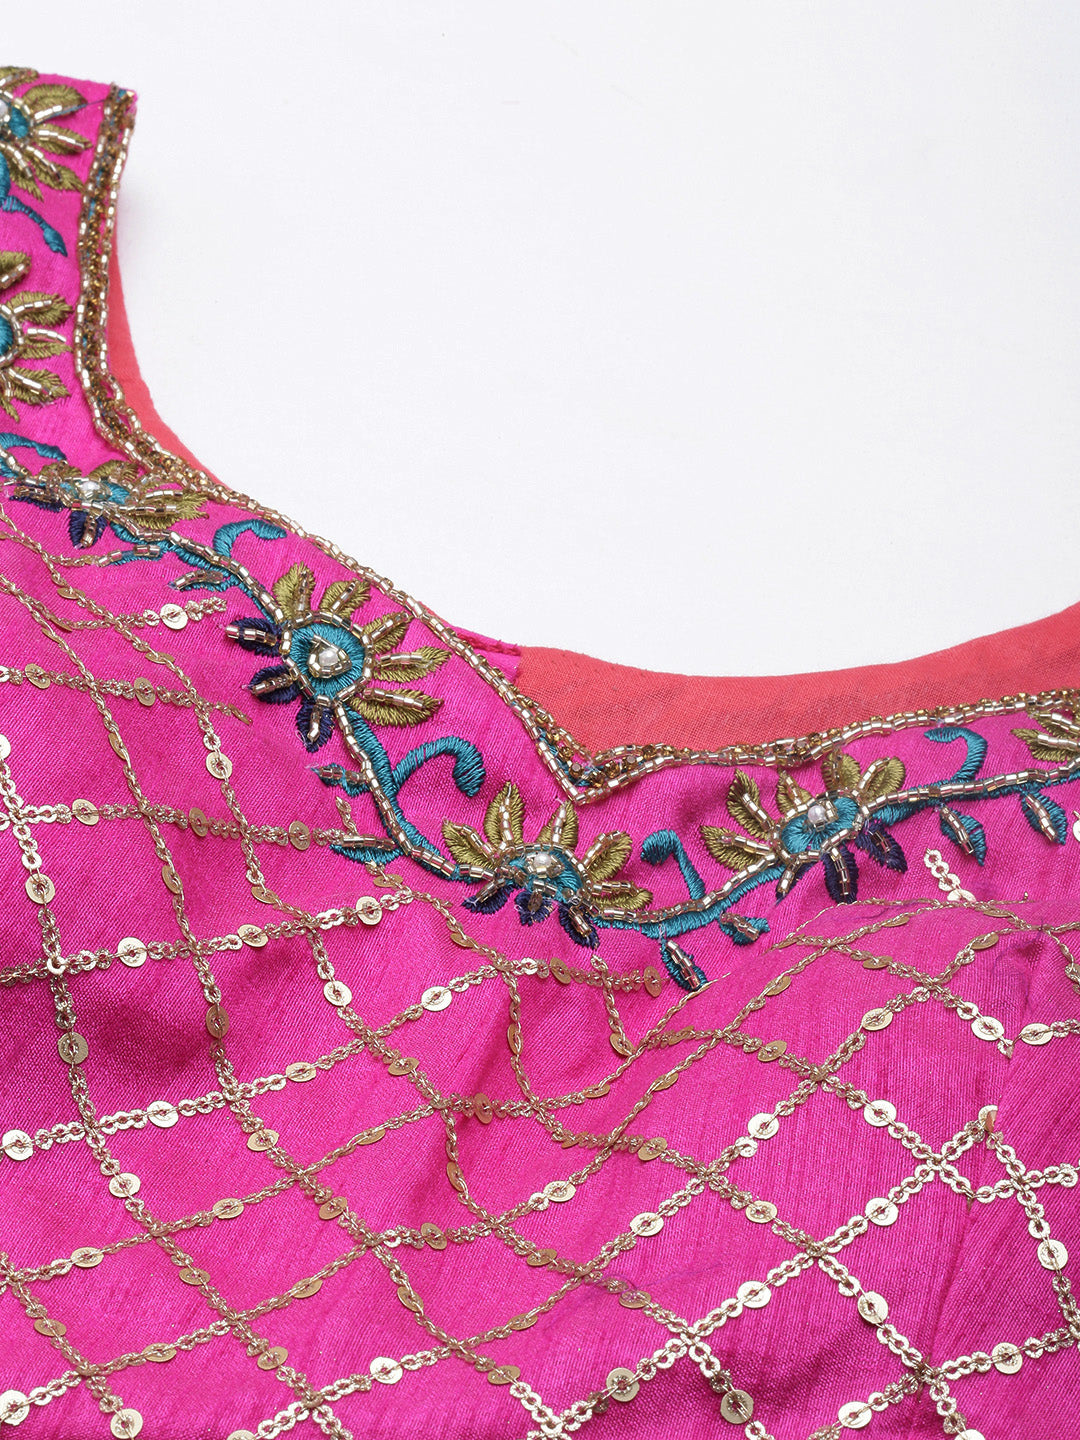 Art Women's wear Jacquard (Paithani) Silk Weaving Zari Work Lehenga choli with Unstitched Blouse And Dupatta